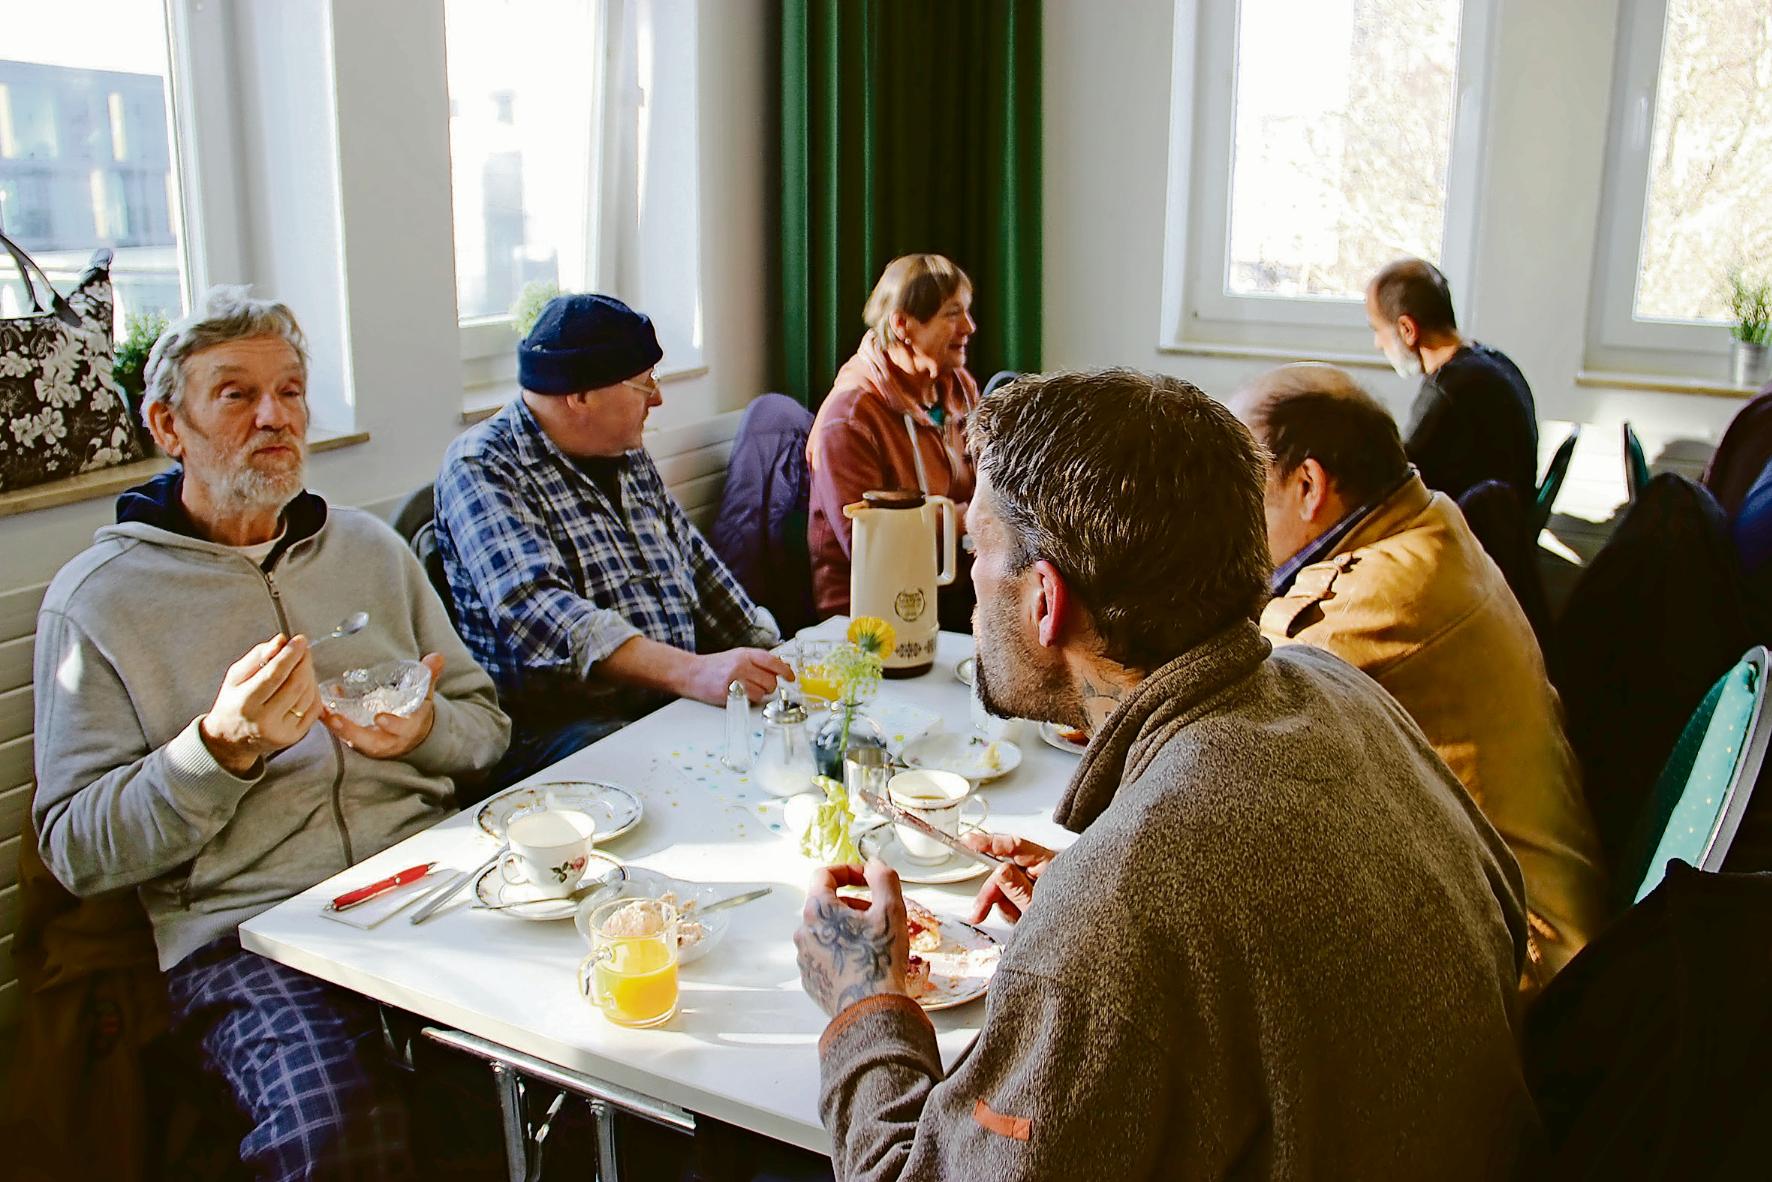 Die meisten Gäste kennen sich, schätzen das Frühstück und Gespräch in netter Atmosphäre. (c) Andrea Thomas